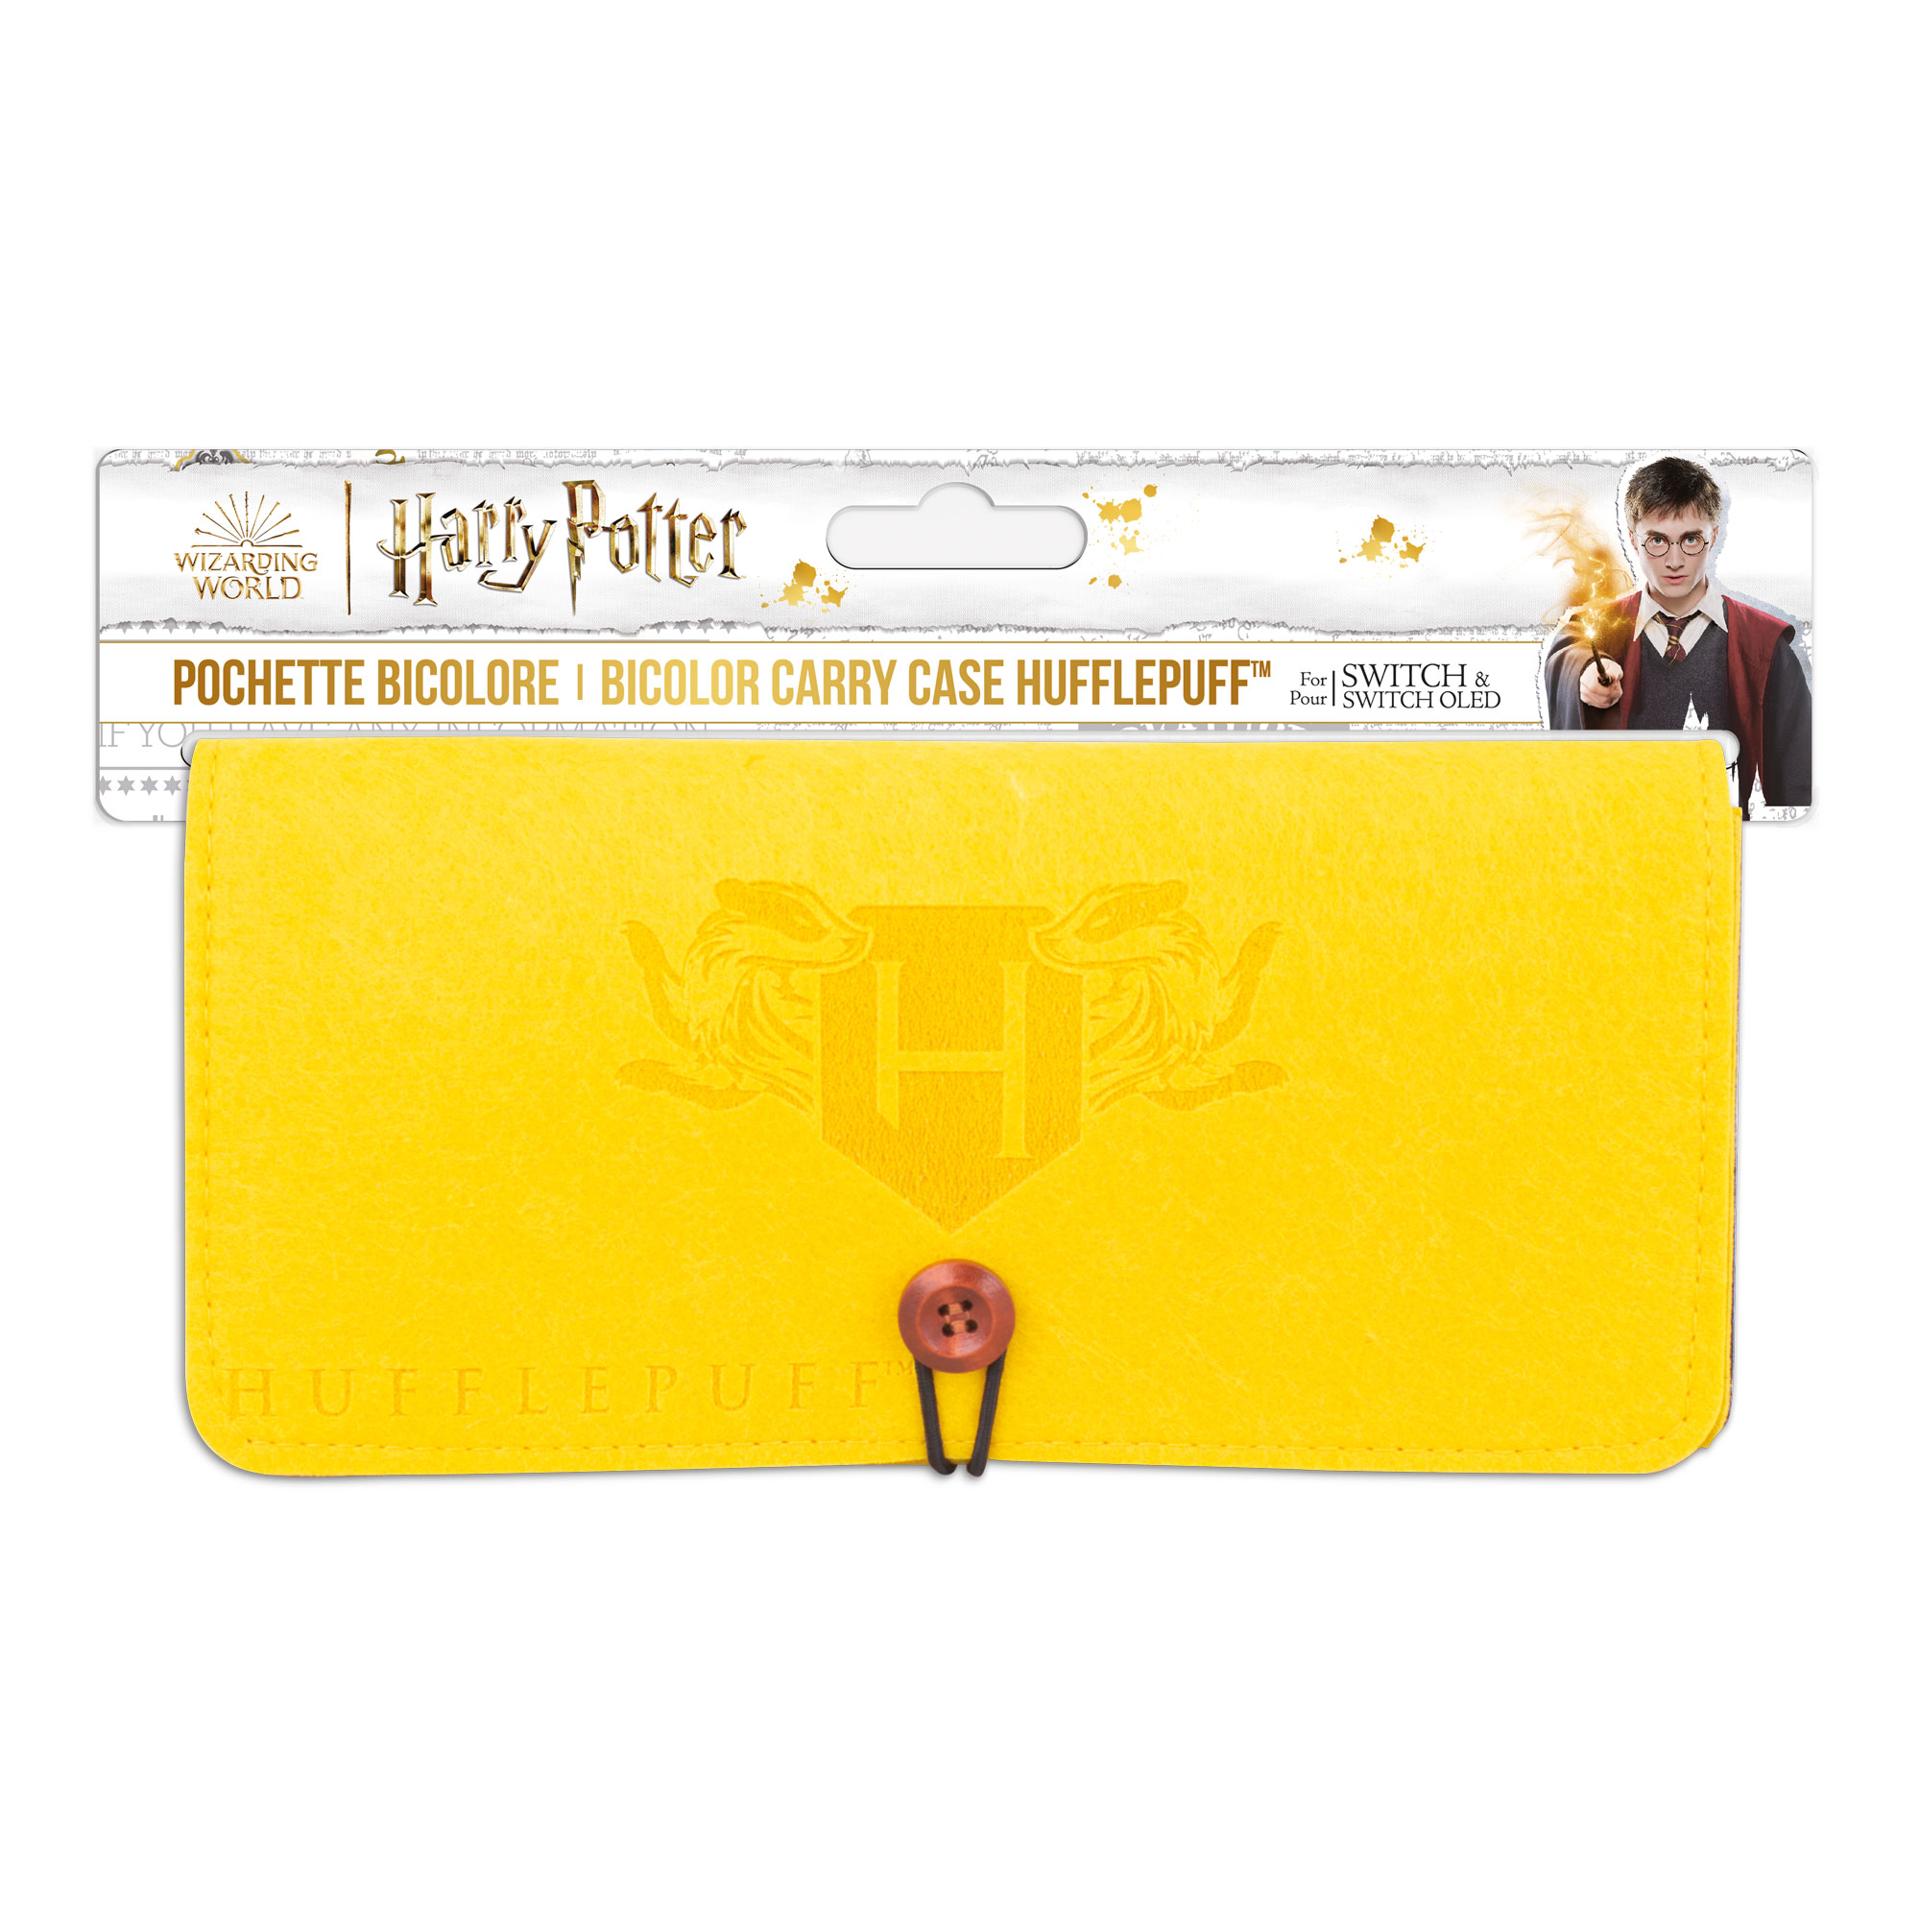 Harry Potter - Pochette de transport en feutrine - Modèle Poufsouffle pour Nintendo Switch et Switch OLED